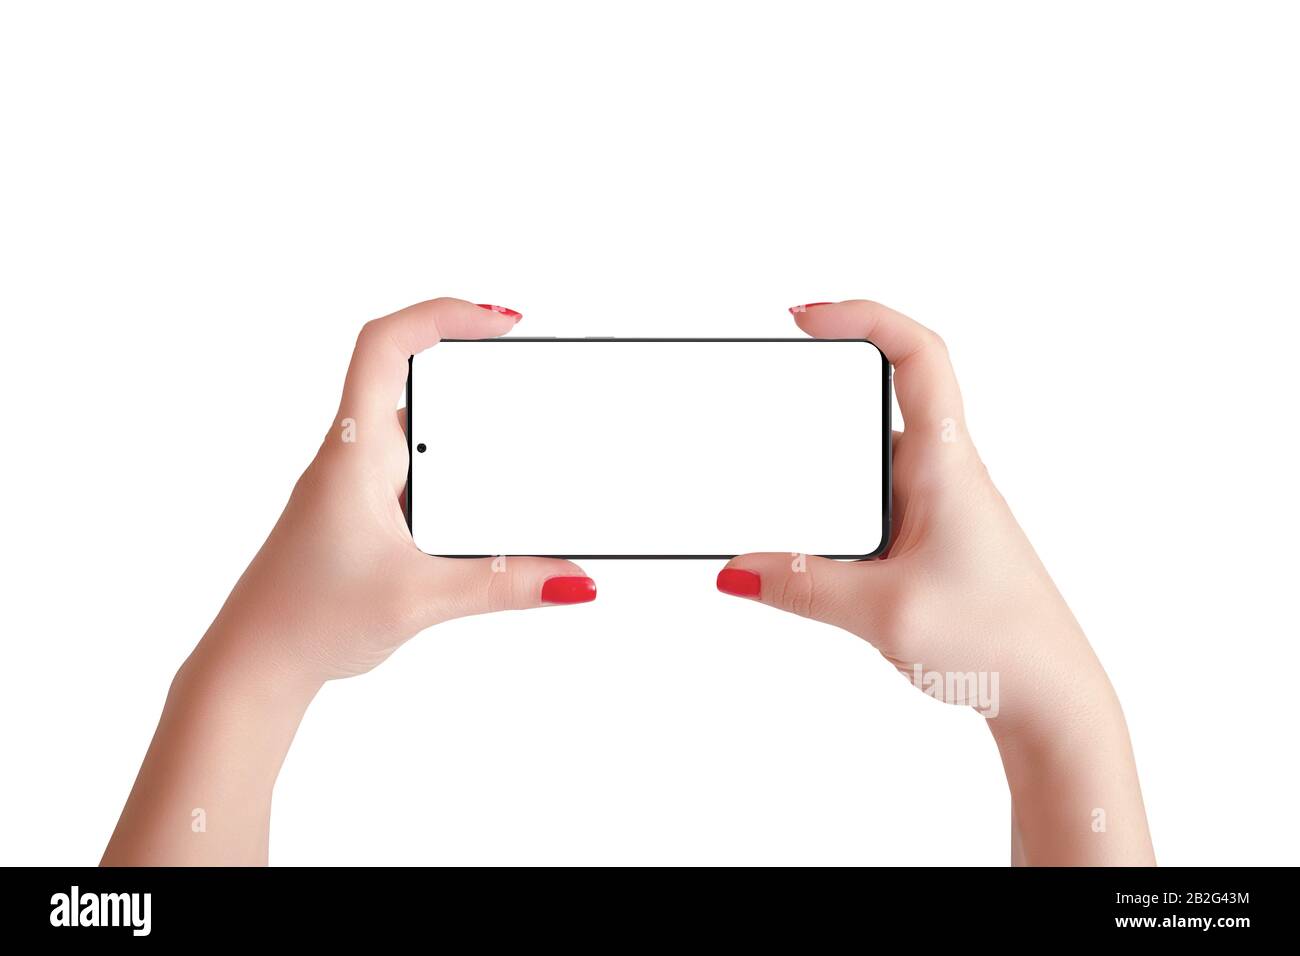 Smartphone moderne en position horizontale dans les mains des femmes. Affichage et arrière-plan isolés Banque D'Images